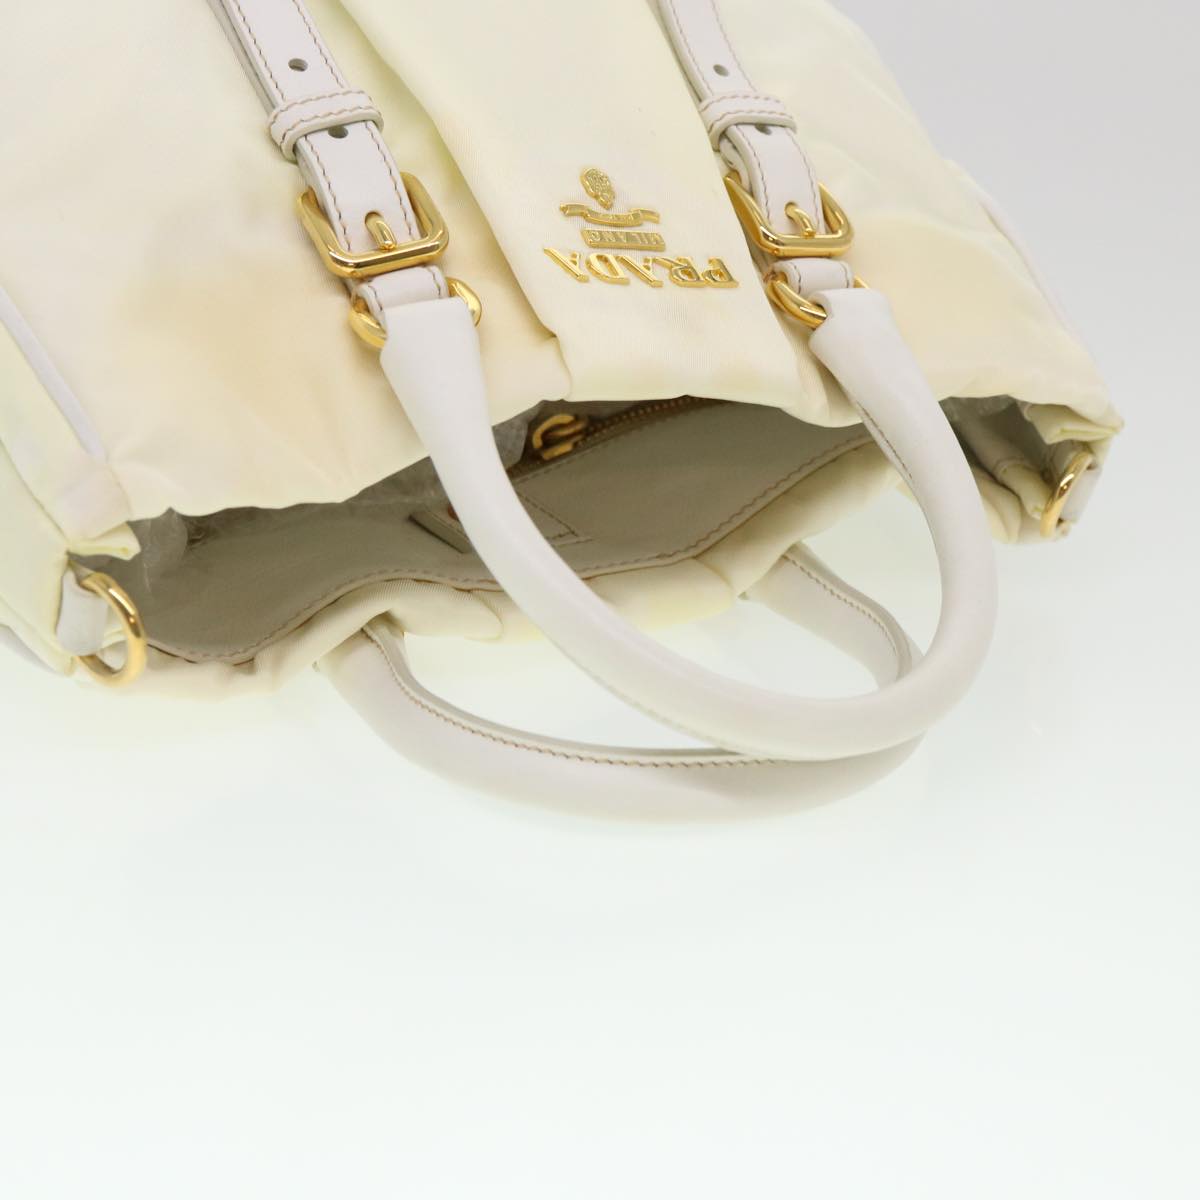 PRADA Hand Bag Nylon 2way White Auth 39688